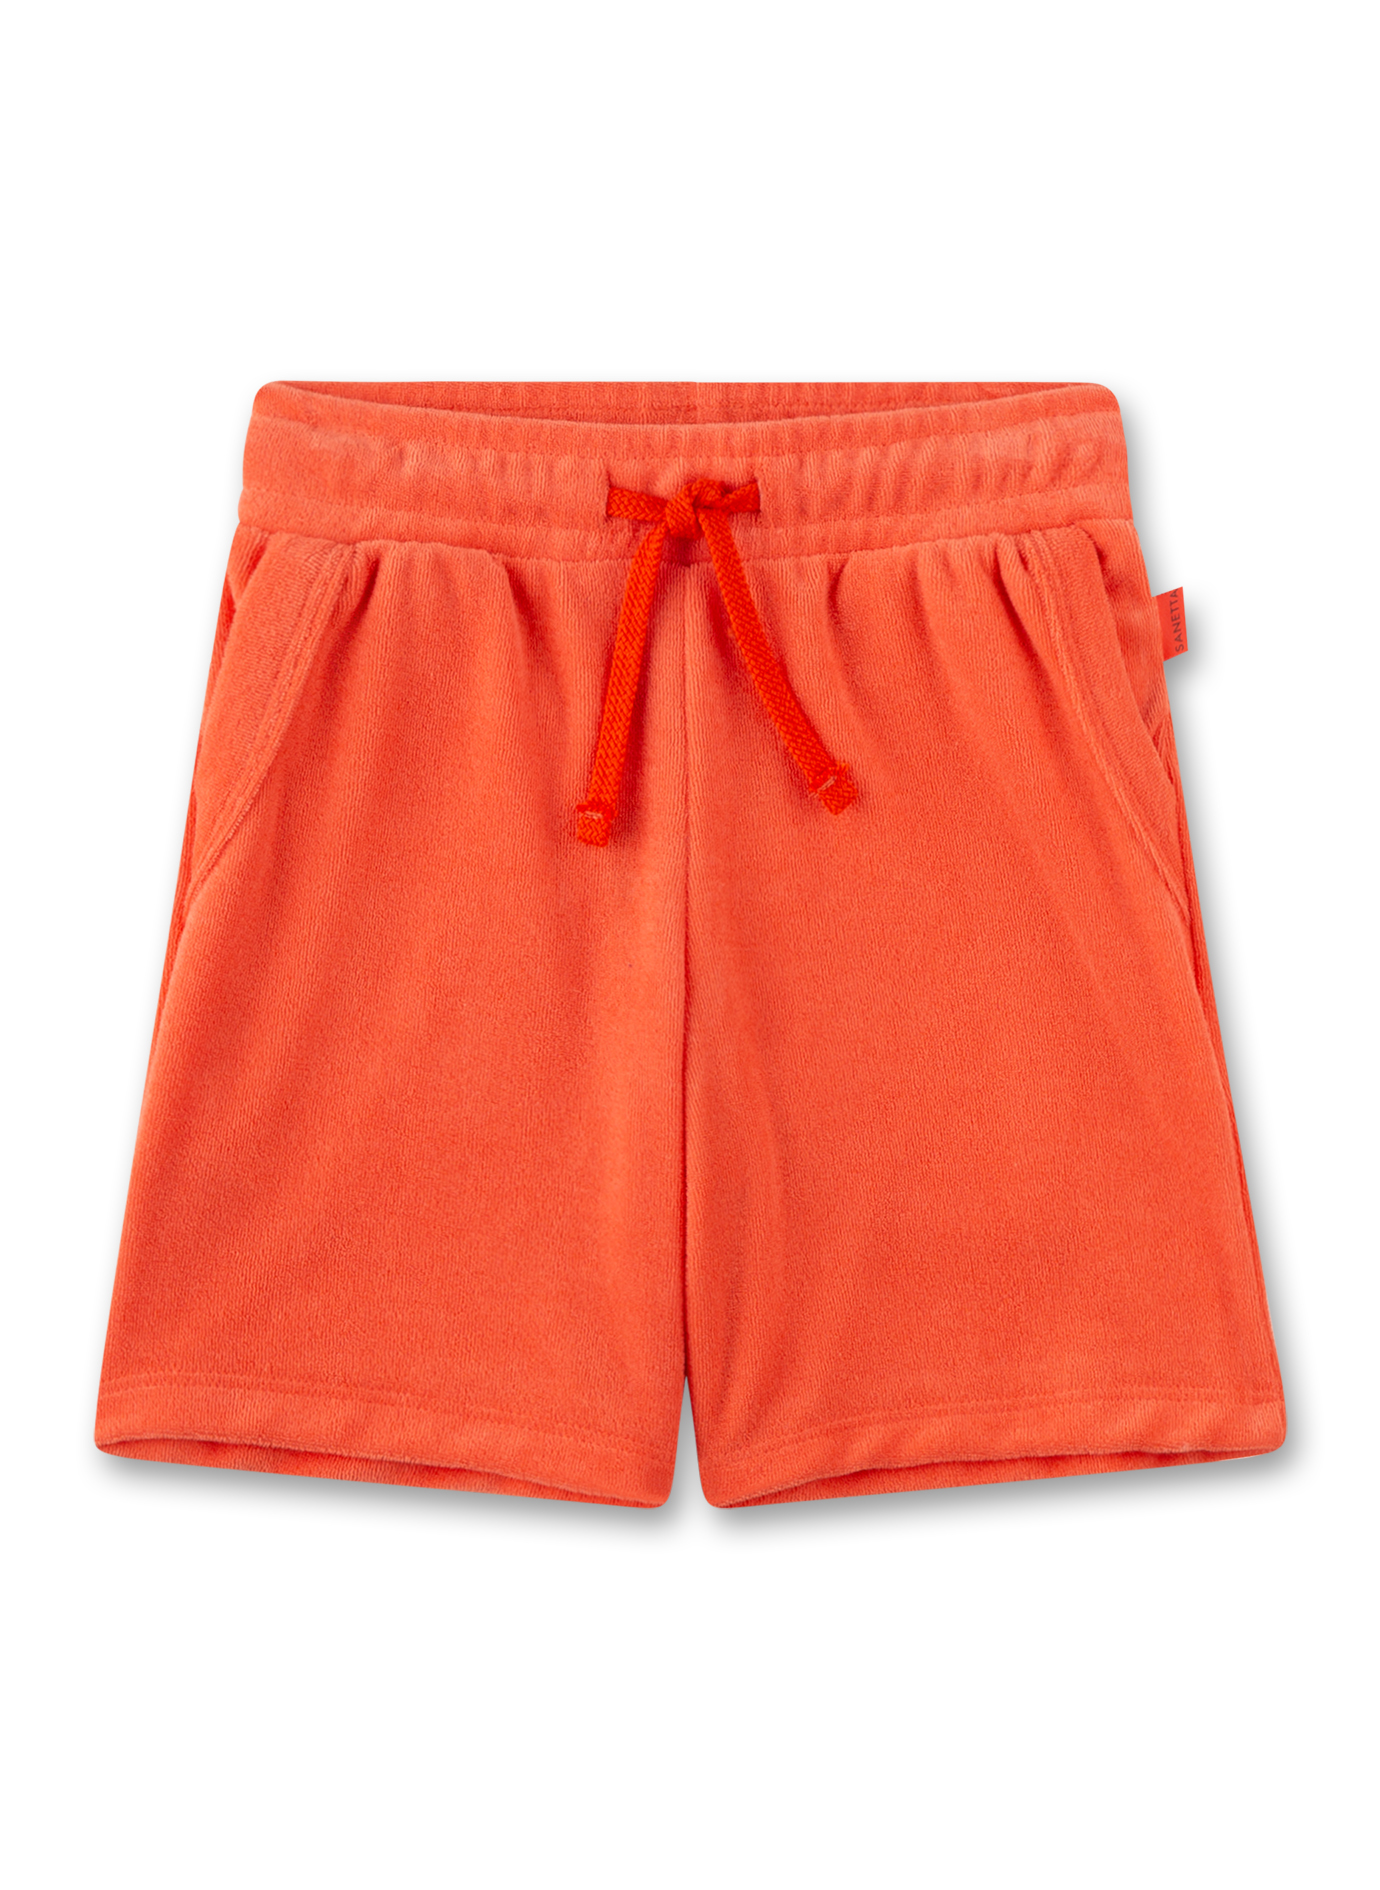 Jungen-Shorts Orange aus Frottee